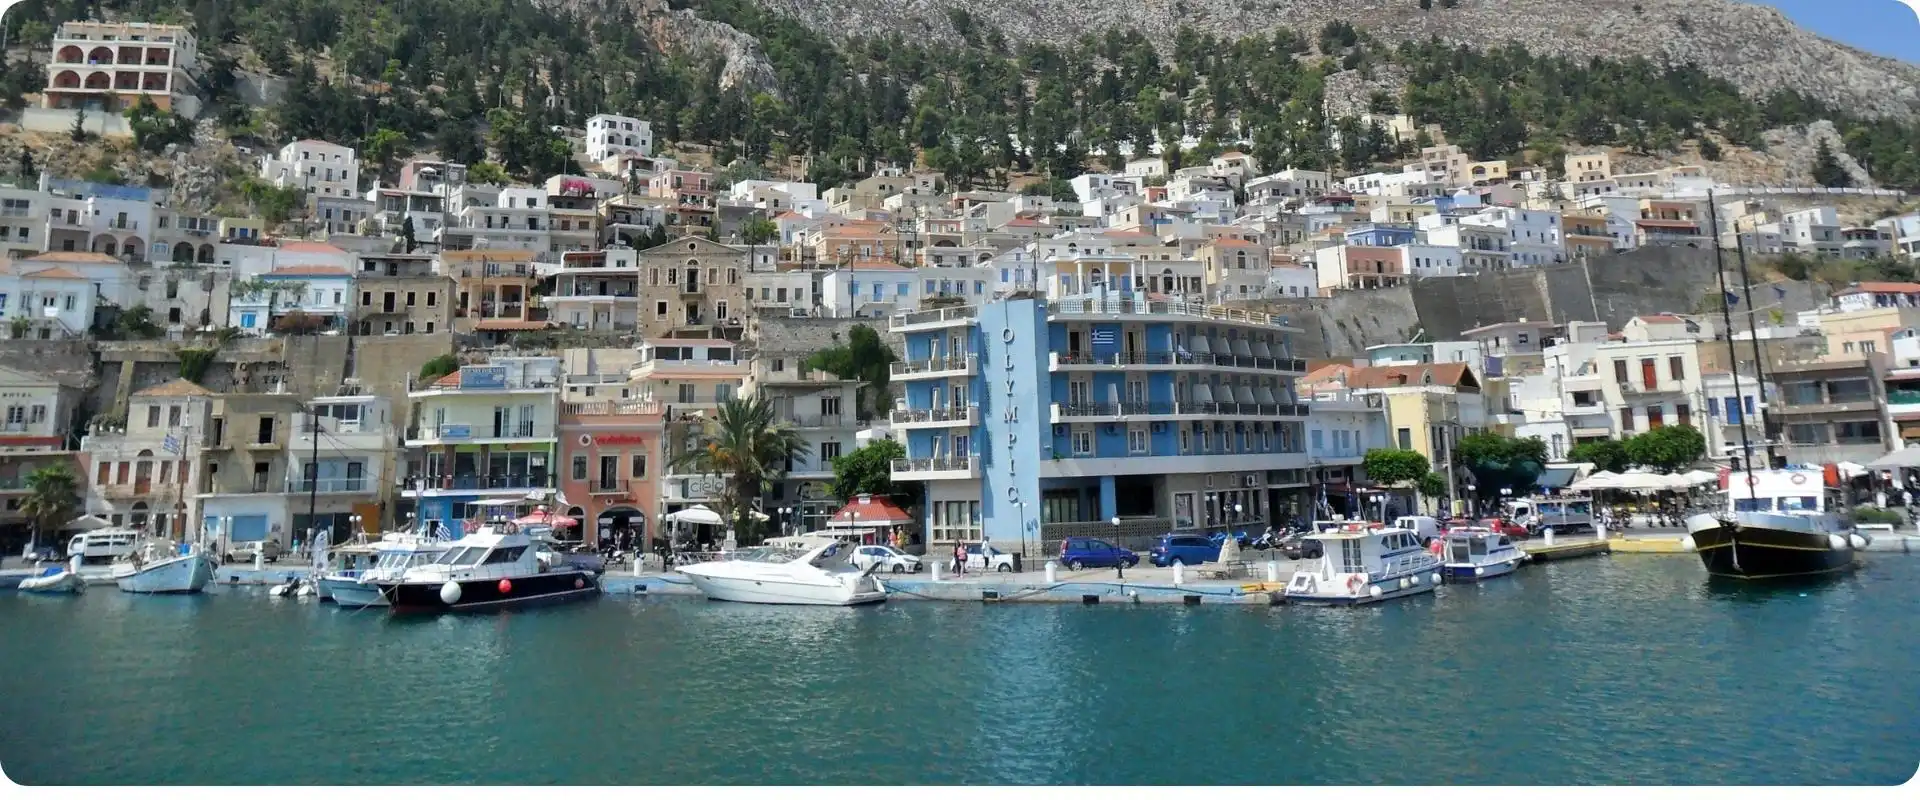 Kalymnos charterrejser til grækenland flyv fra hamborg.webp